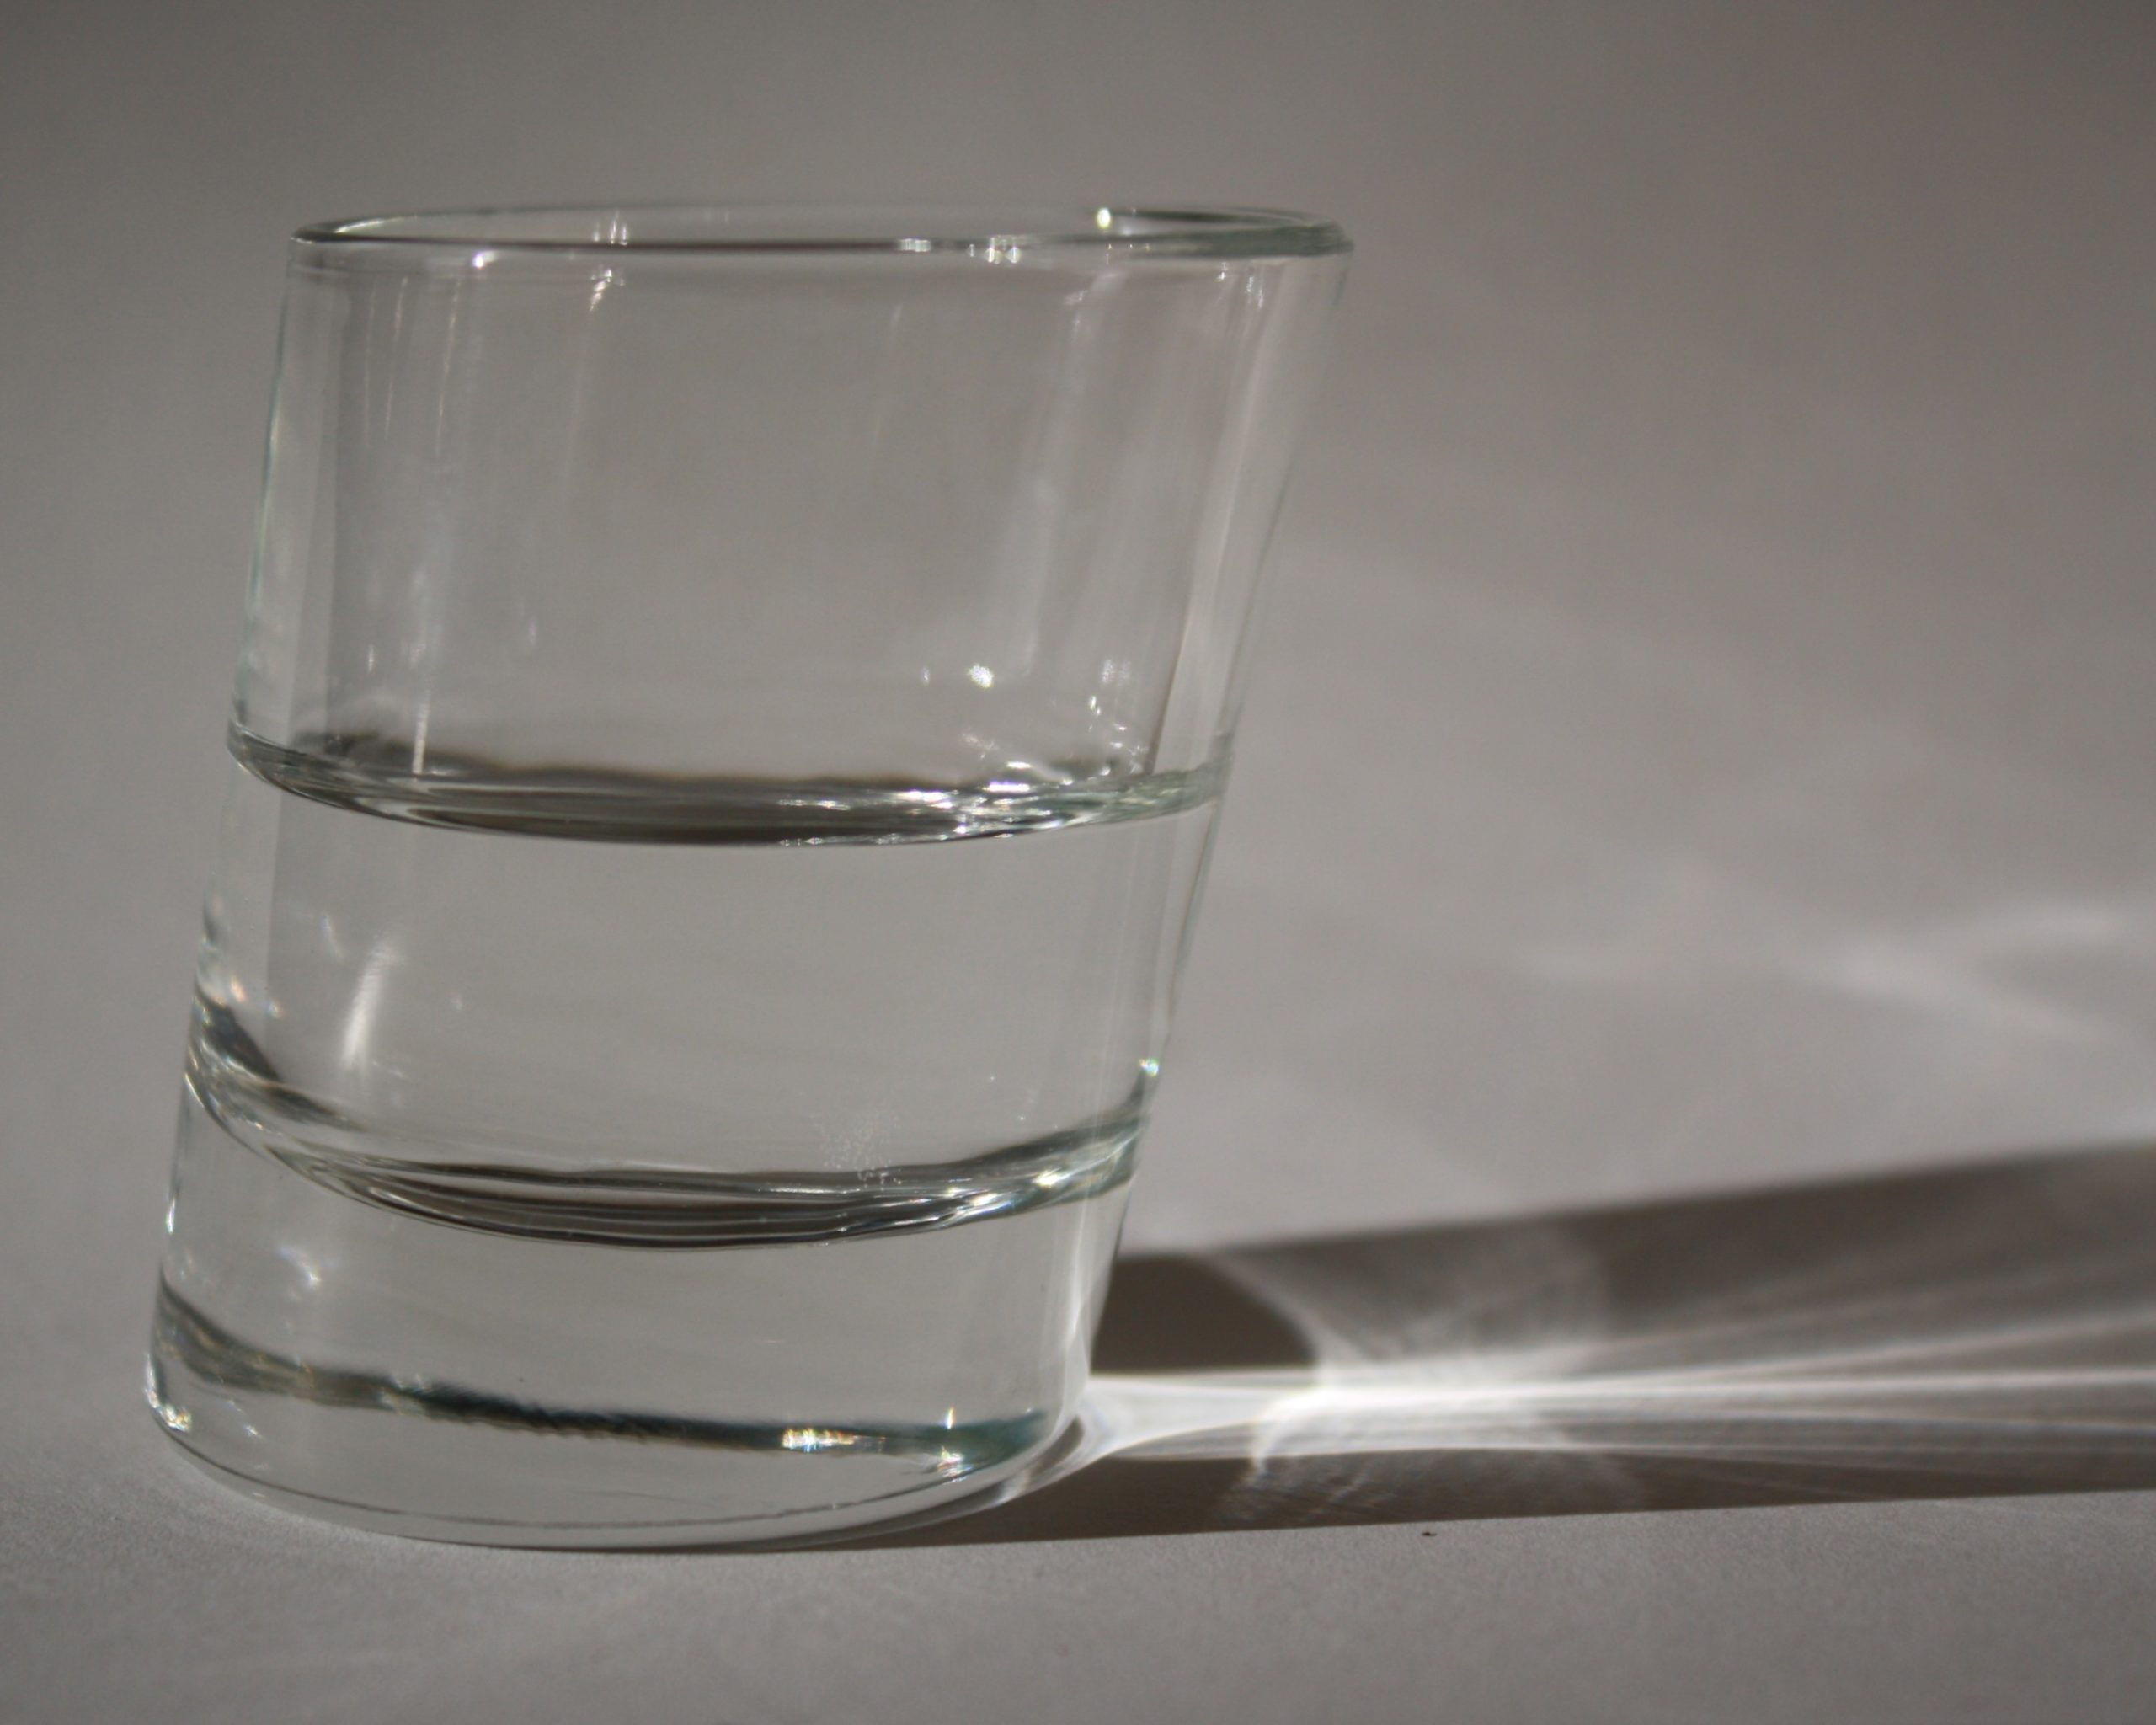 perspektiven: ein Photo von einem schrägen Glas, das zur Hälfte mit Wasser gefüllt ist.